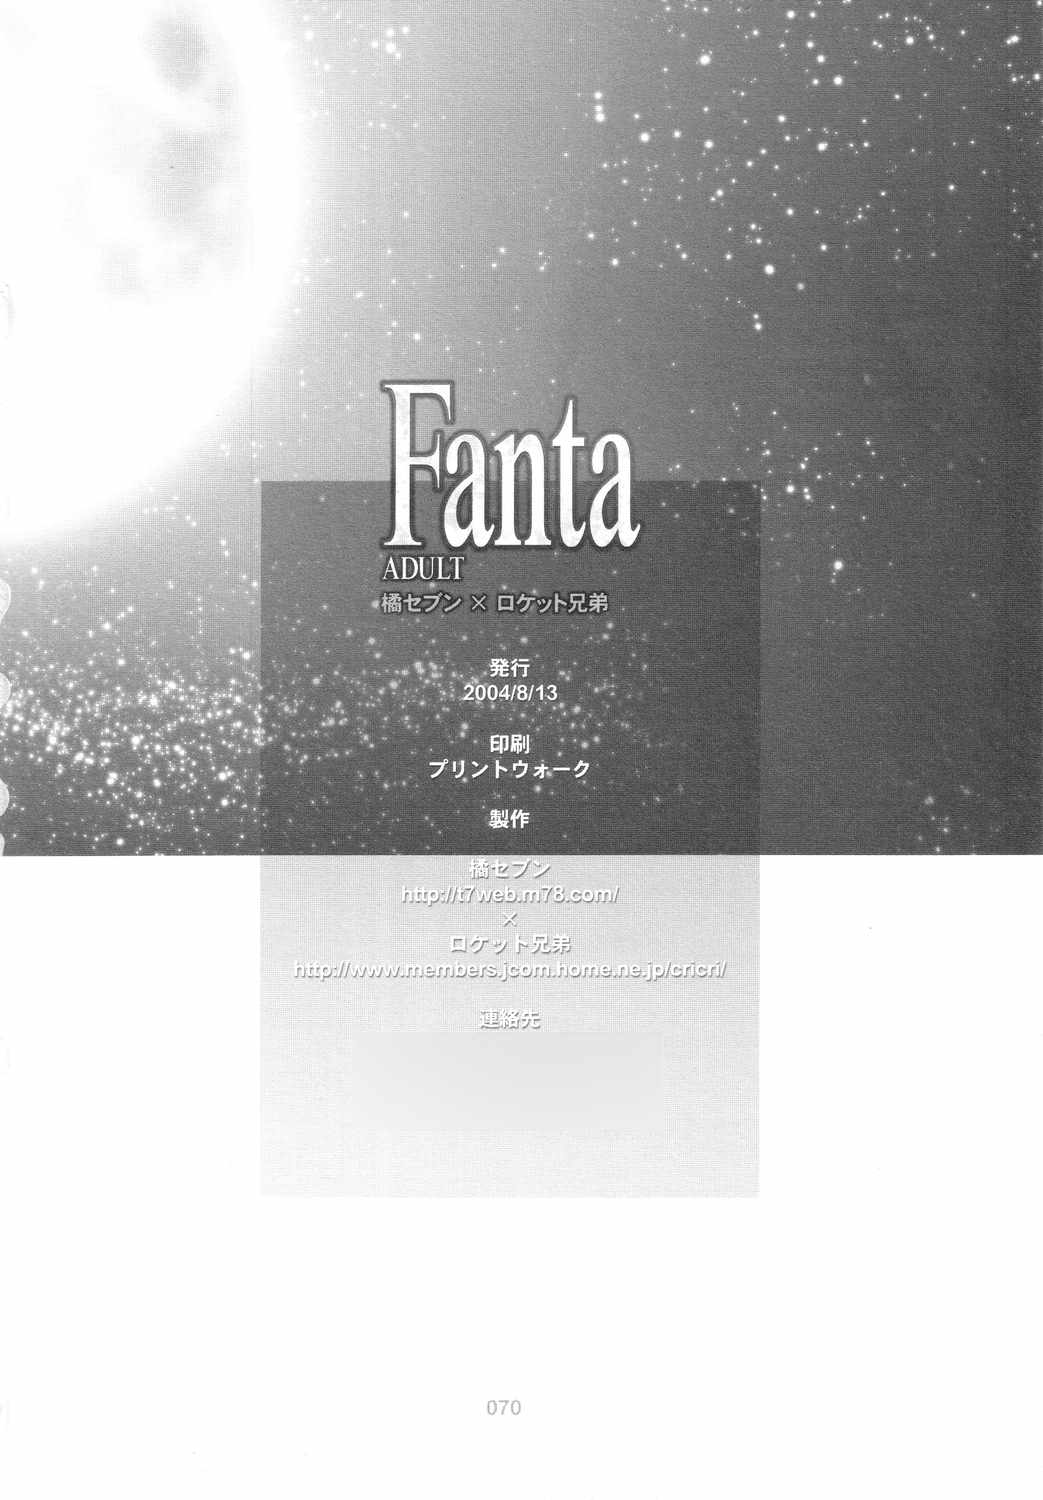 [橘セブン×ロケット兄弟] Fanta ADULT (Fate/stay night)